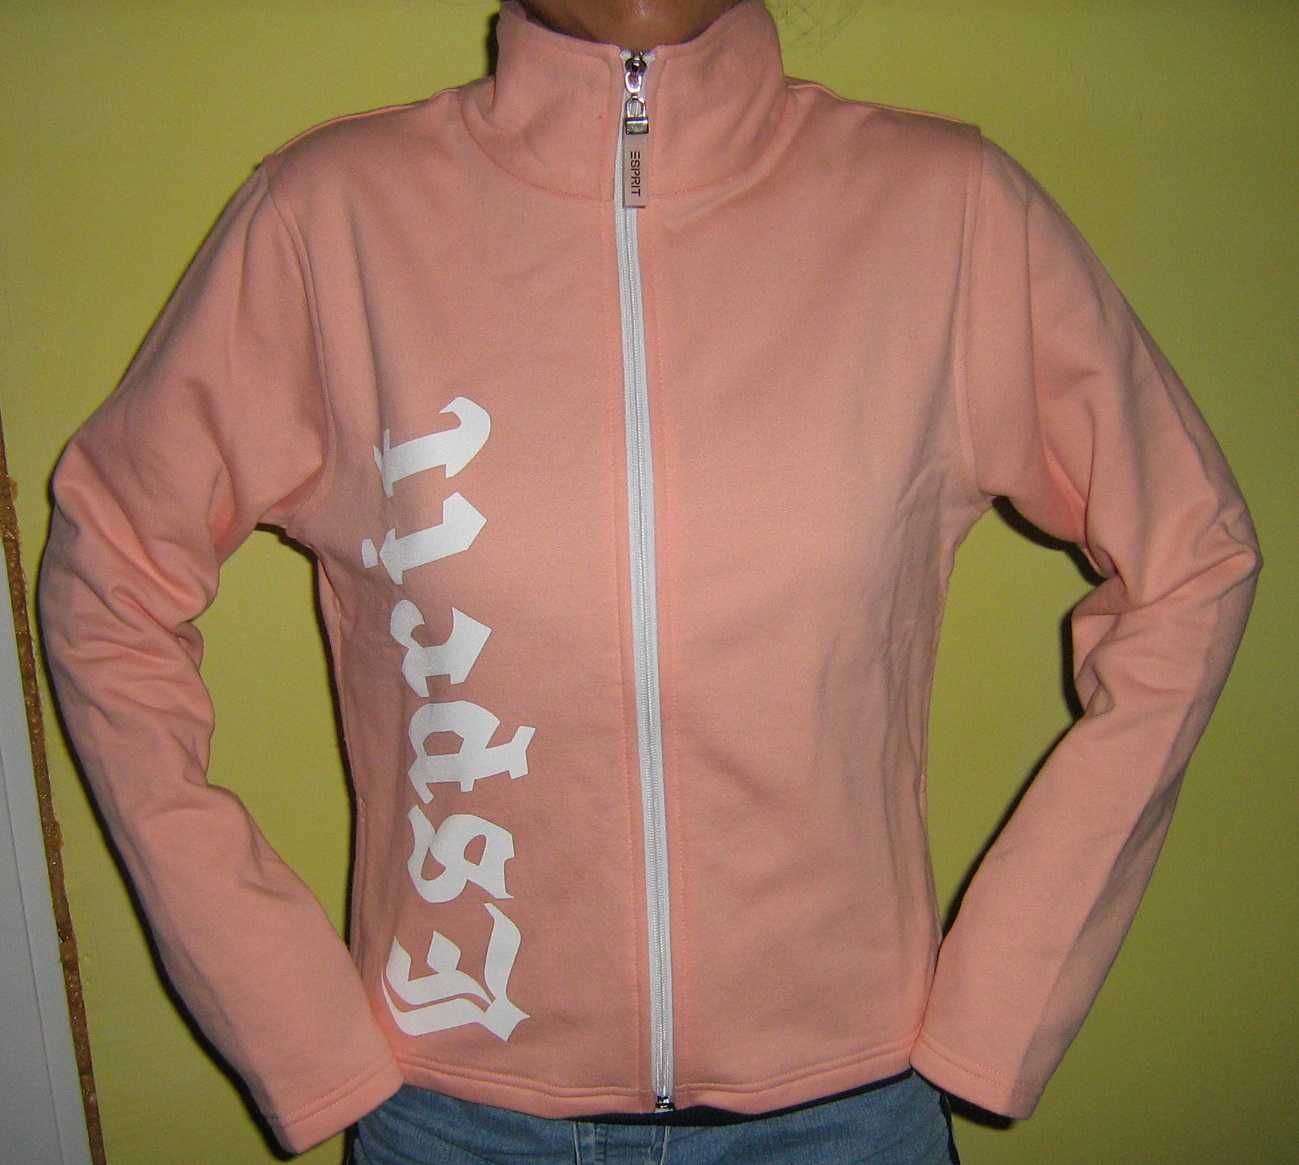 ESPRIT блуза - суичър, размер М, Нова с етикет, Разпродажба от магазин